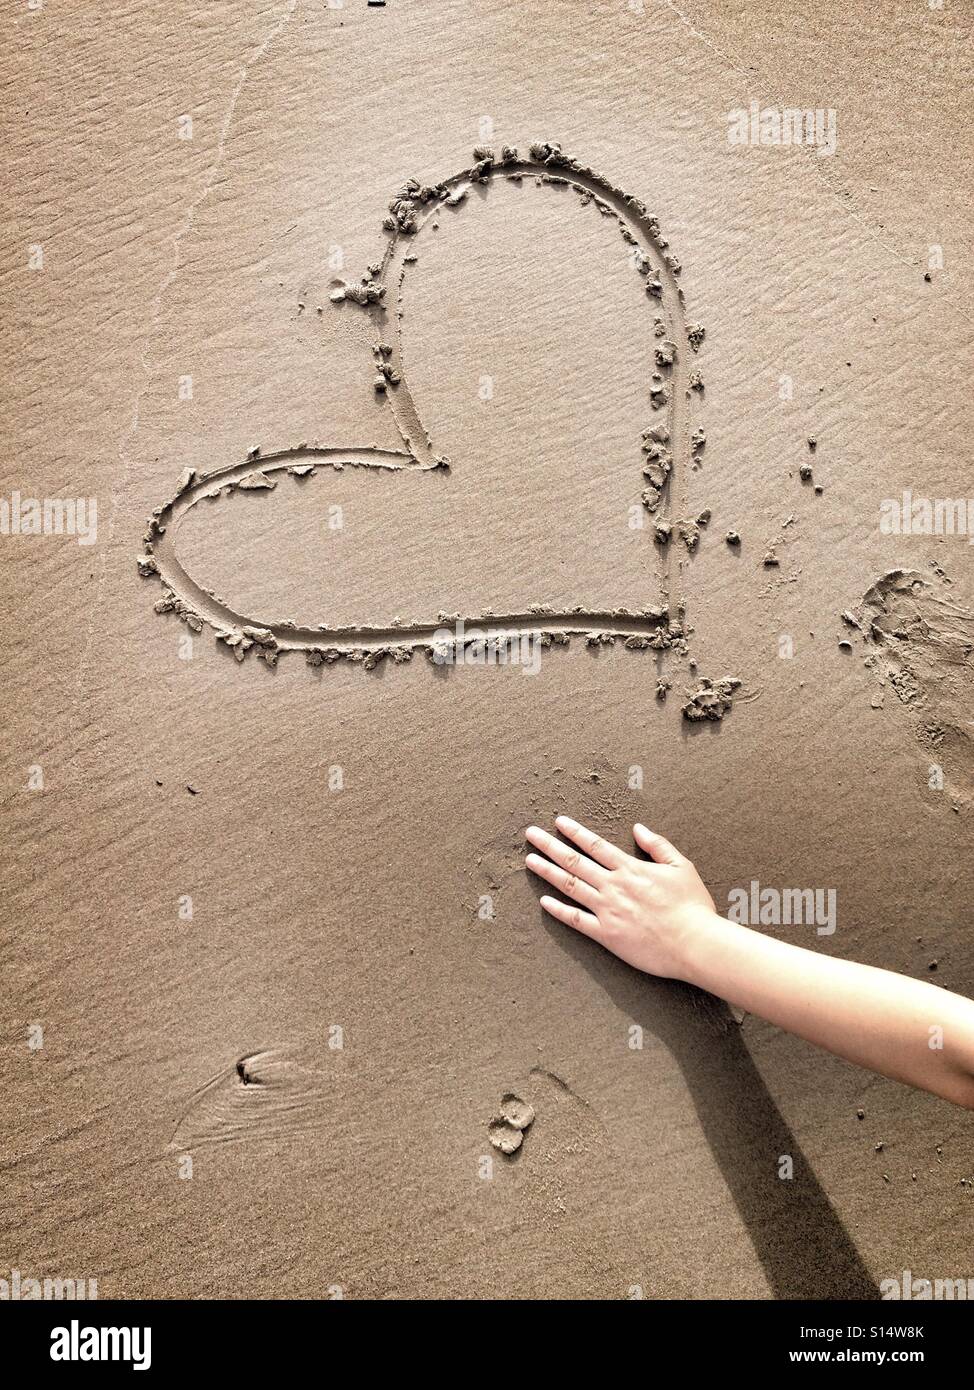 Una sola mano è una schematizzazione di un disegno di cuore nella sabbia - rappresenta un esempio di amore e romanticismo, la spiaggia di sabbia e il mare Foto Stock